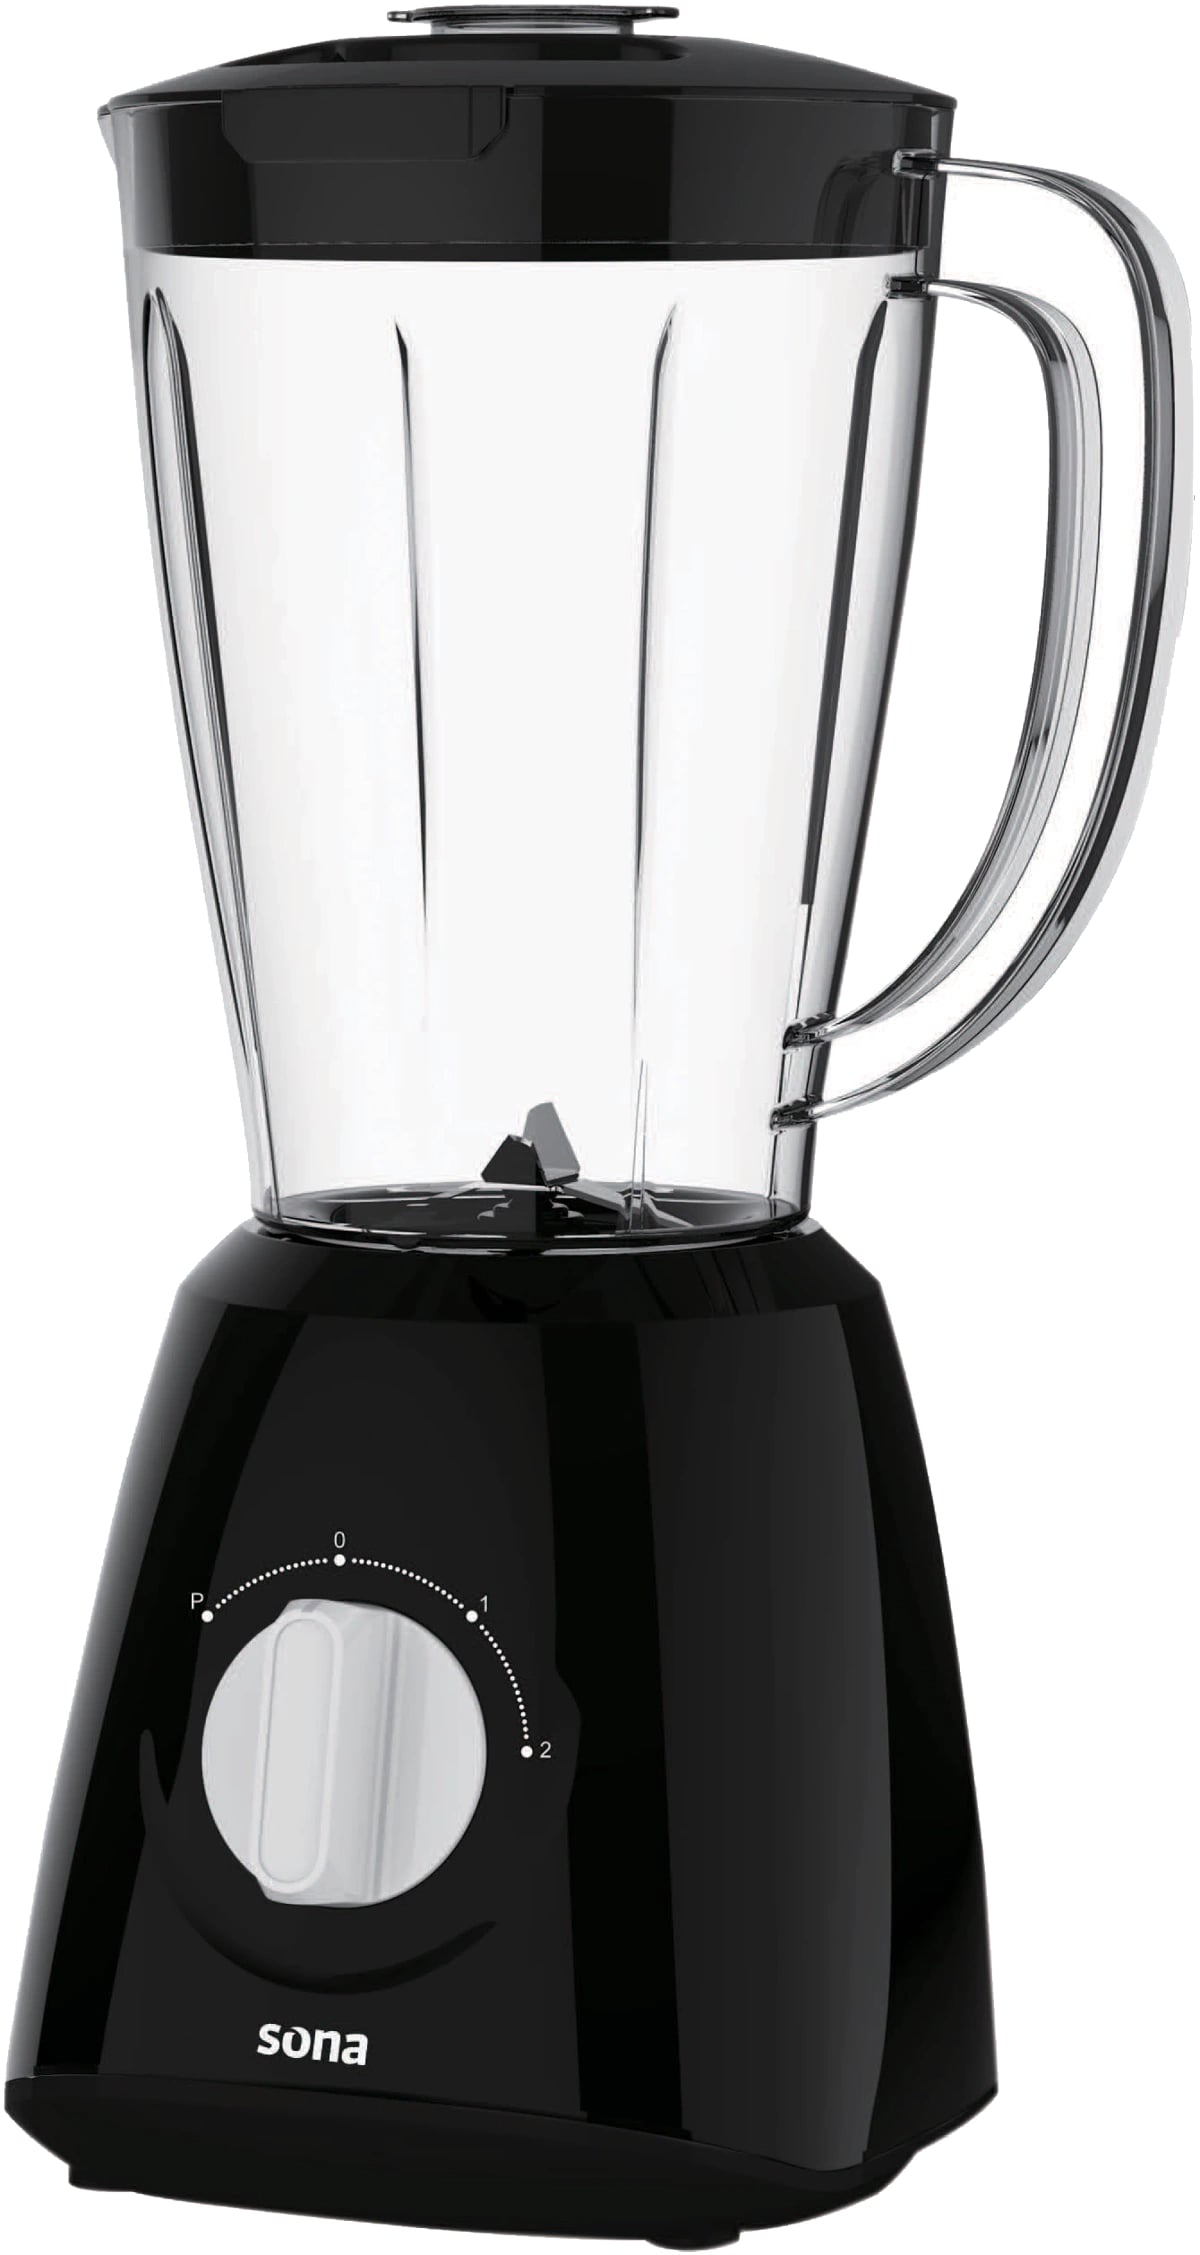 Sona Blender 400 W Plastic Jar Black Color Additional Coffee Grinder